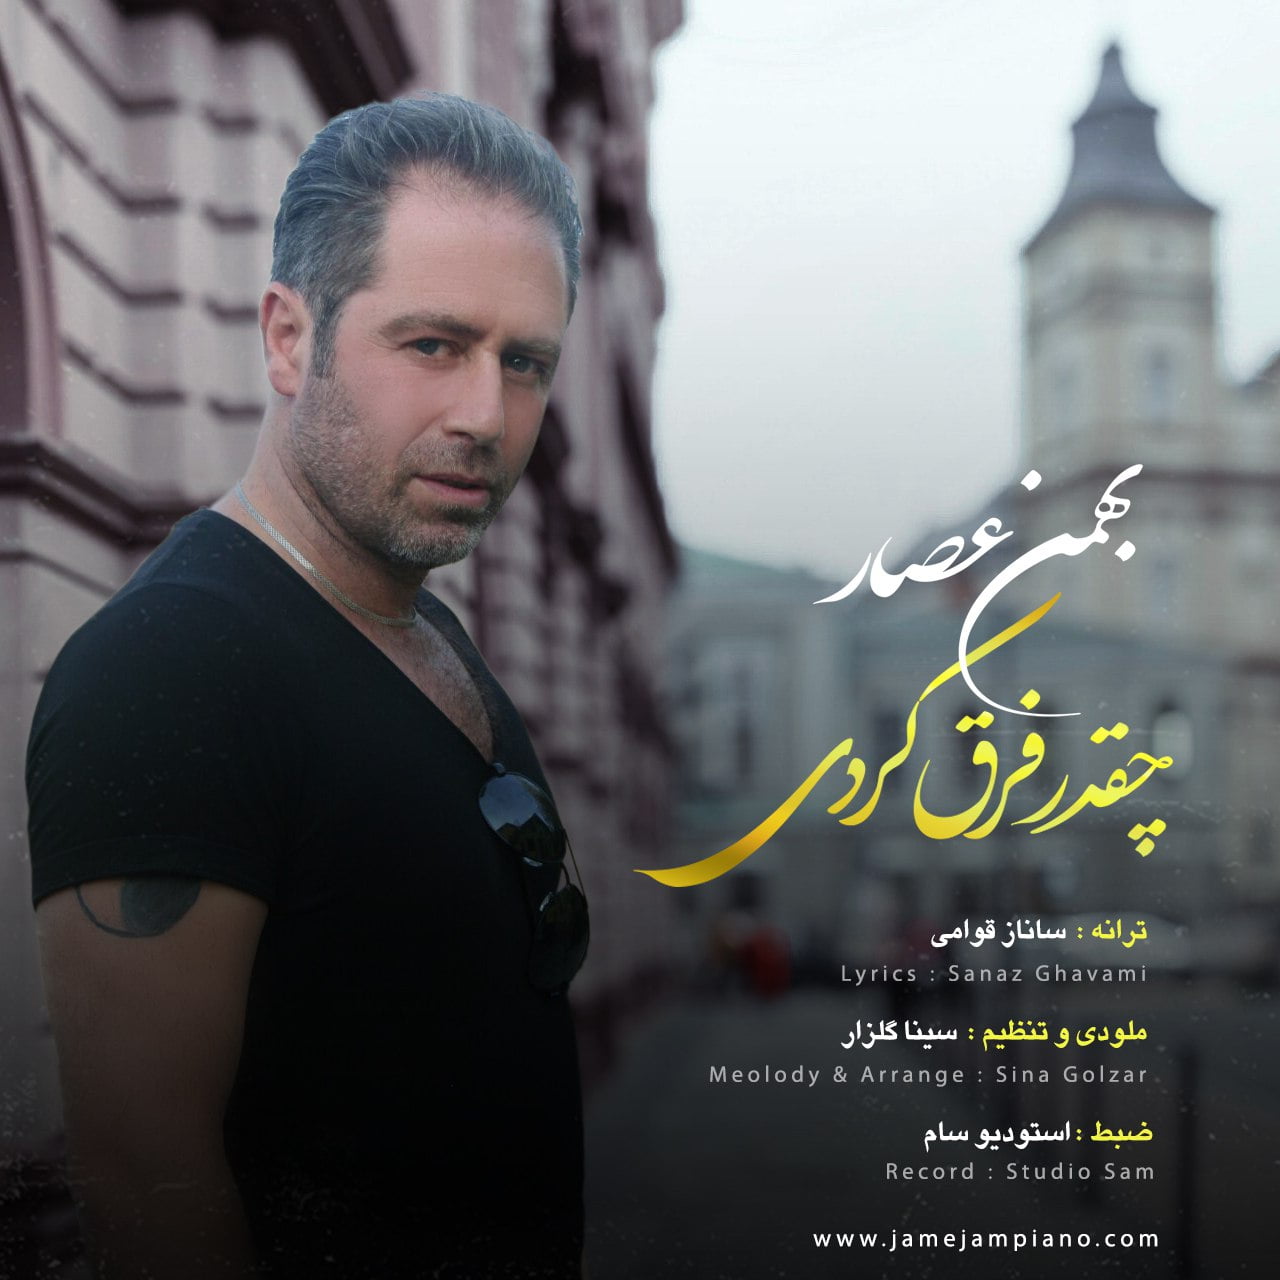 دانلود آهنگ جدید بهمن عصار با عنوان چقدر فرق کردی